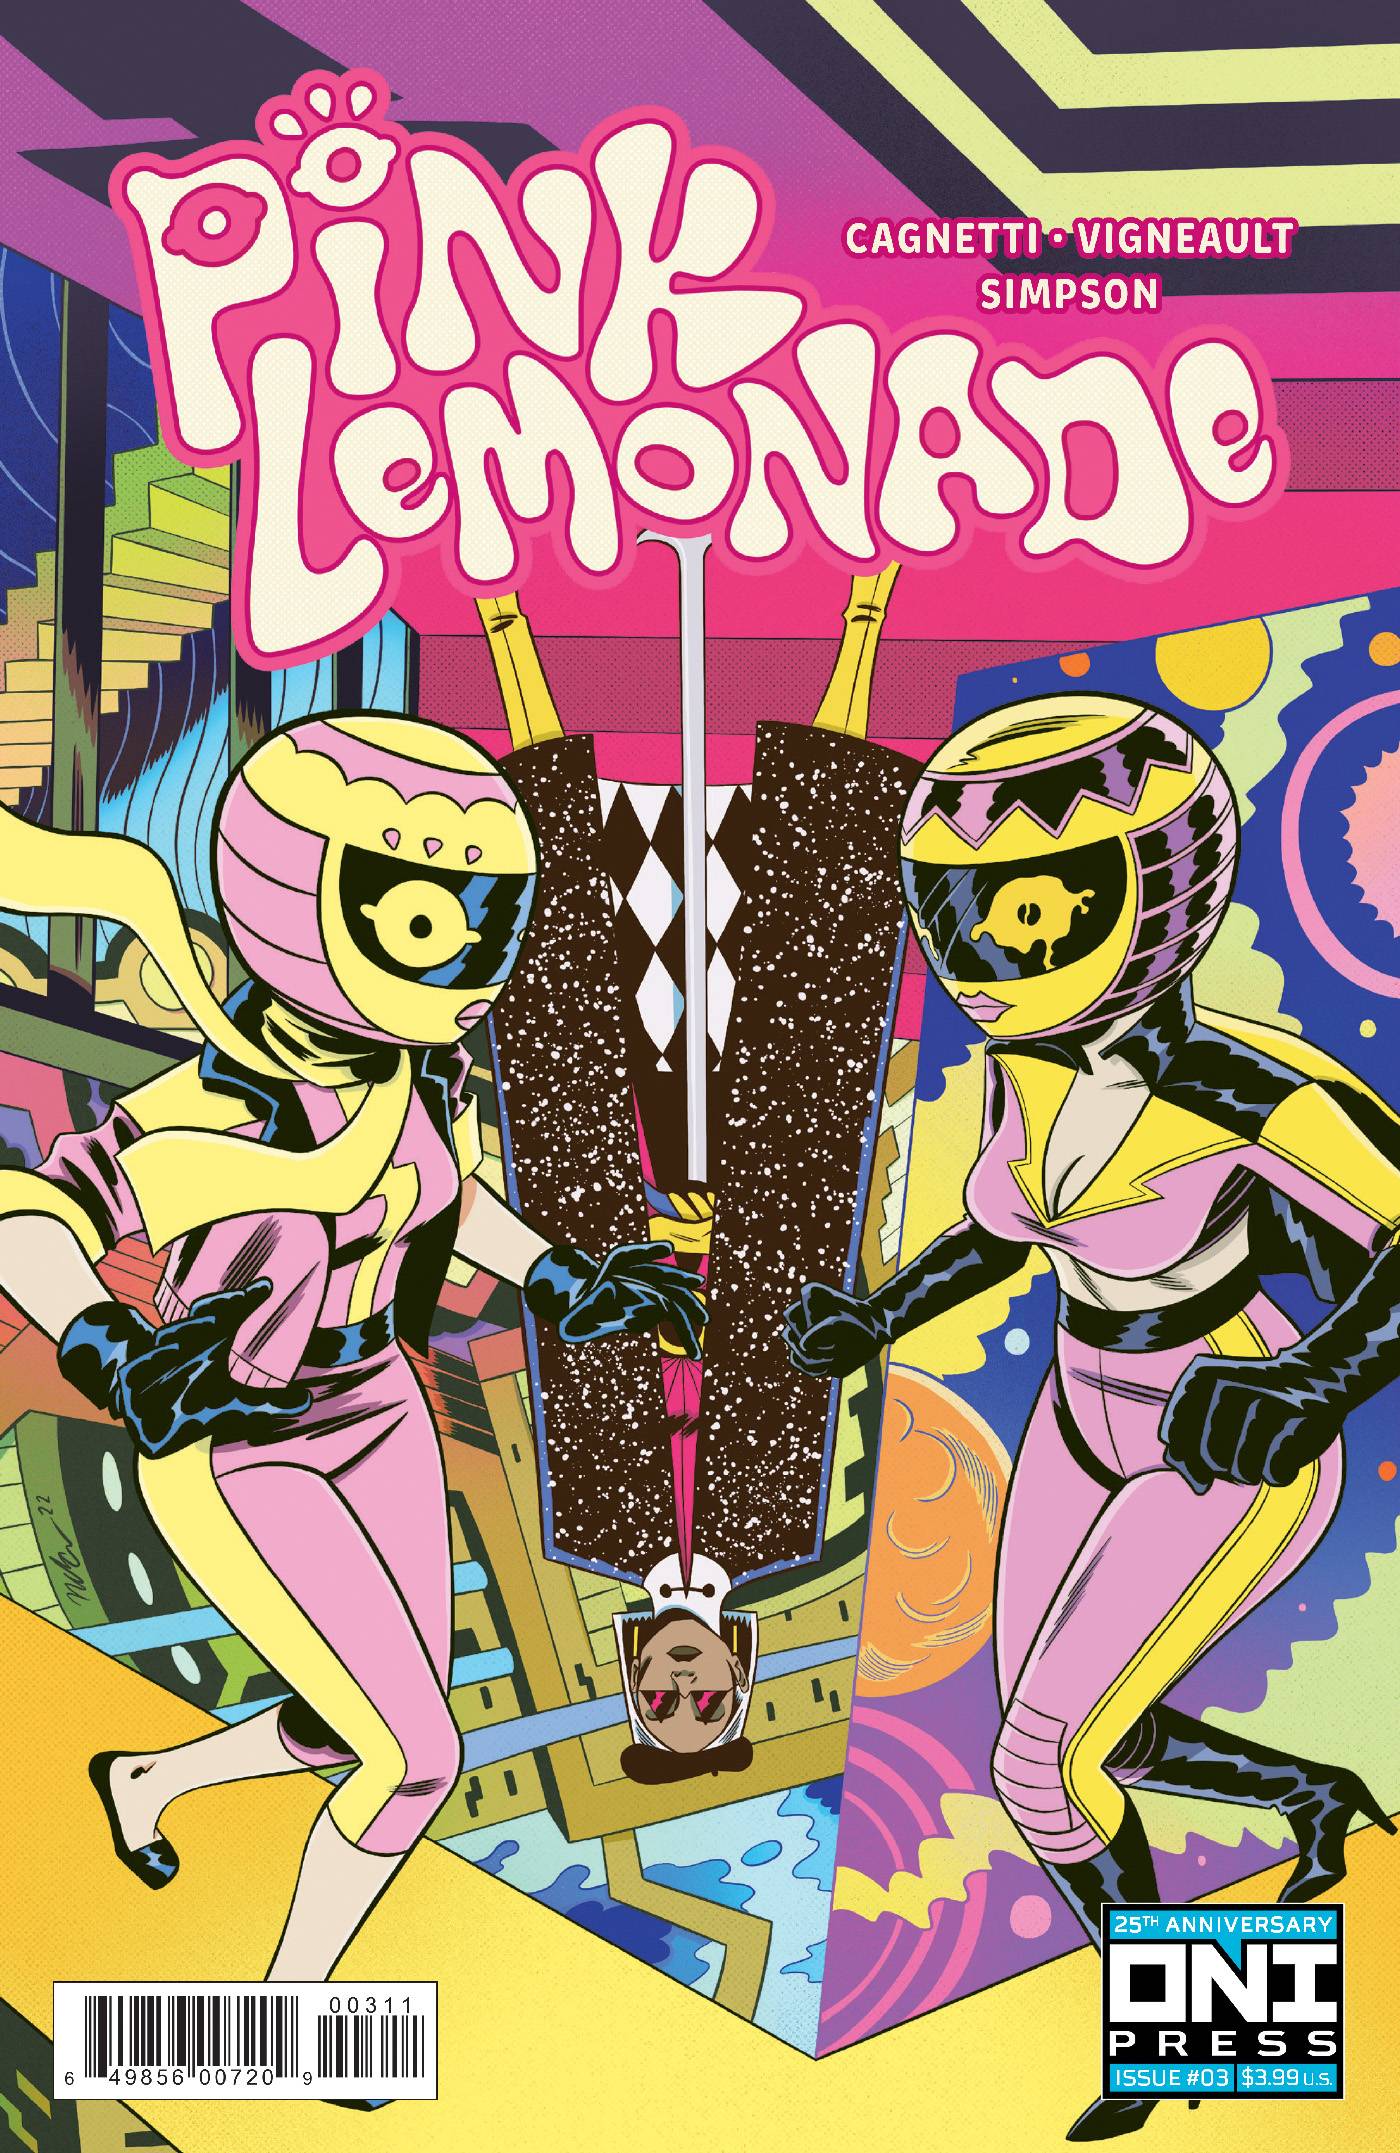 Comic lemonade